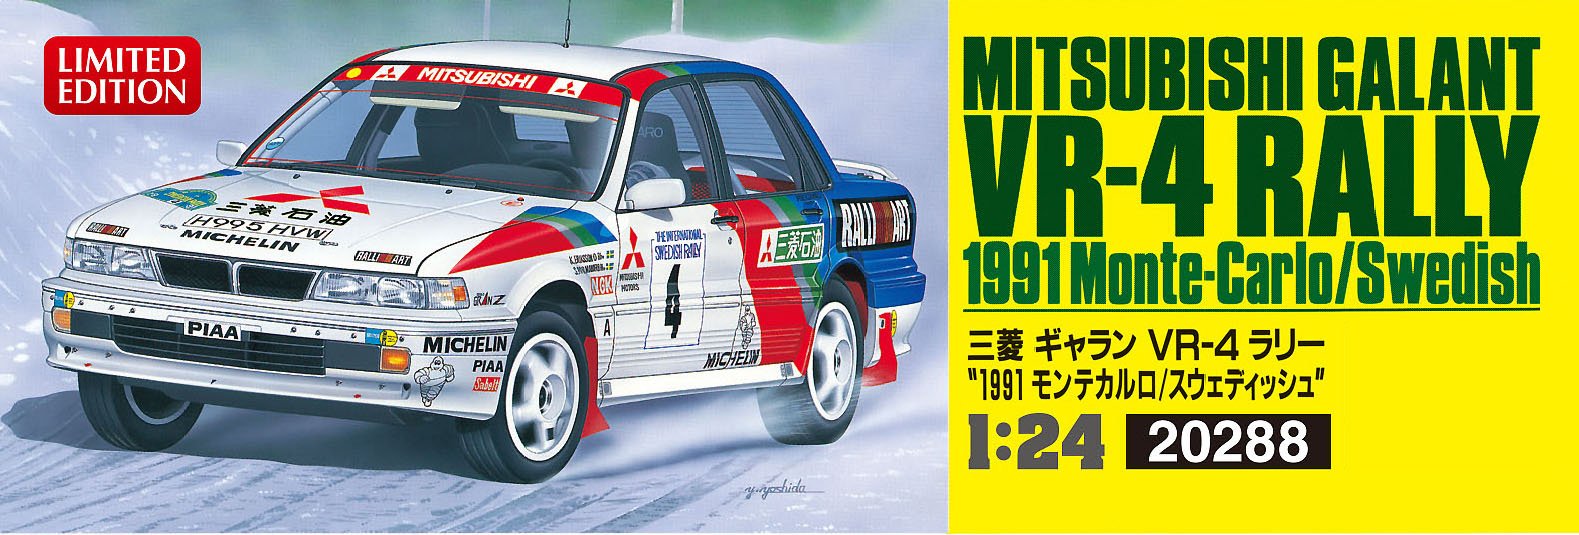 Hasegawa 20288 Mitsubishi Galant Vr-4 Rally 1991 Monte-Carlo/ Swedish 1/24 Scale Kit